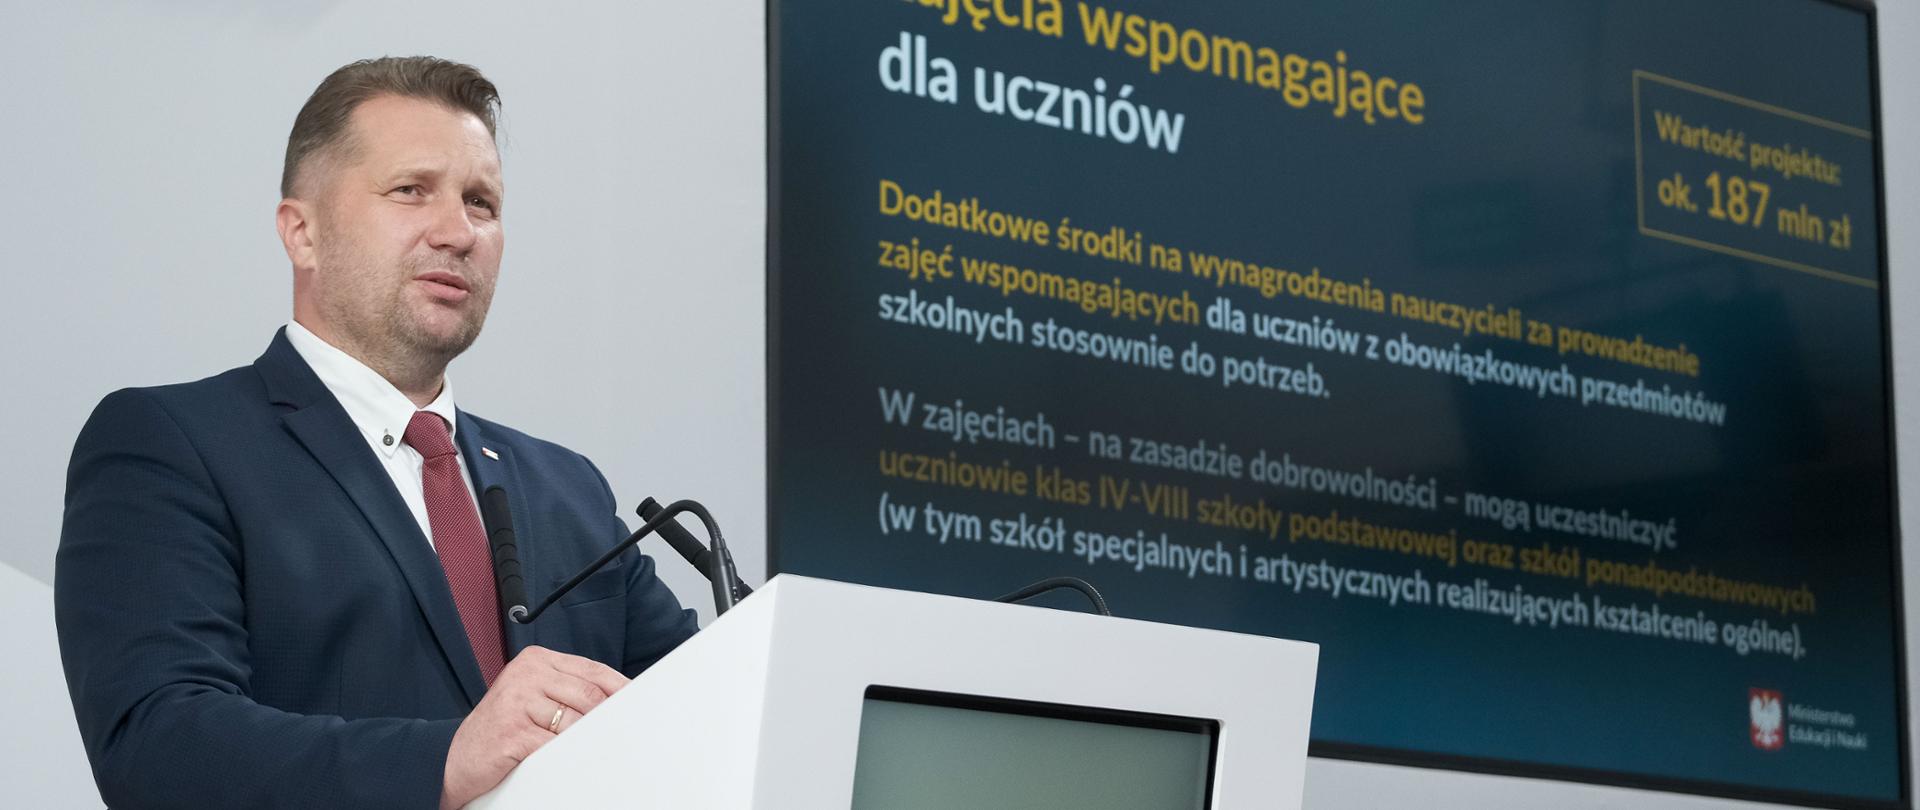 Minister Edukacji i Nauki Przemysław Czarnek stoi przy mównicy podczas konferencji. W tle ekran z prezentacją.